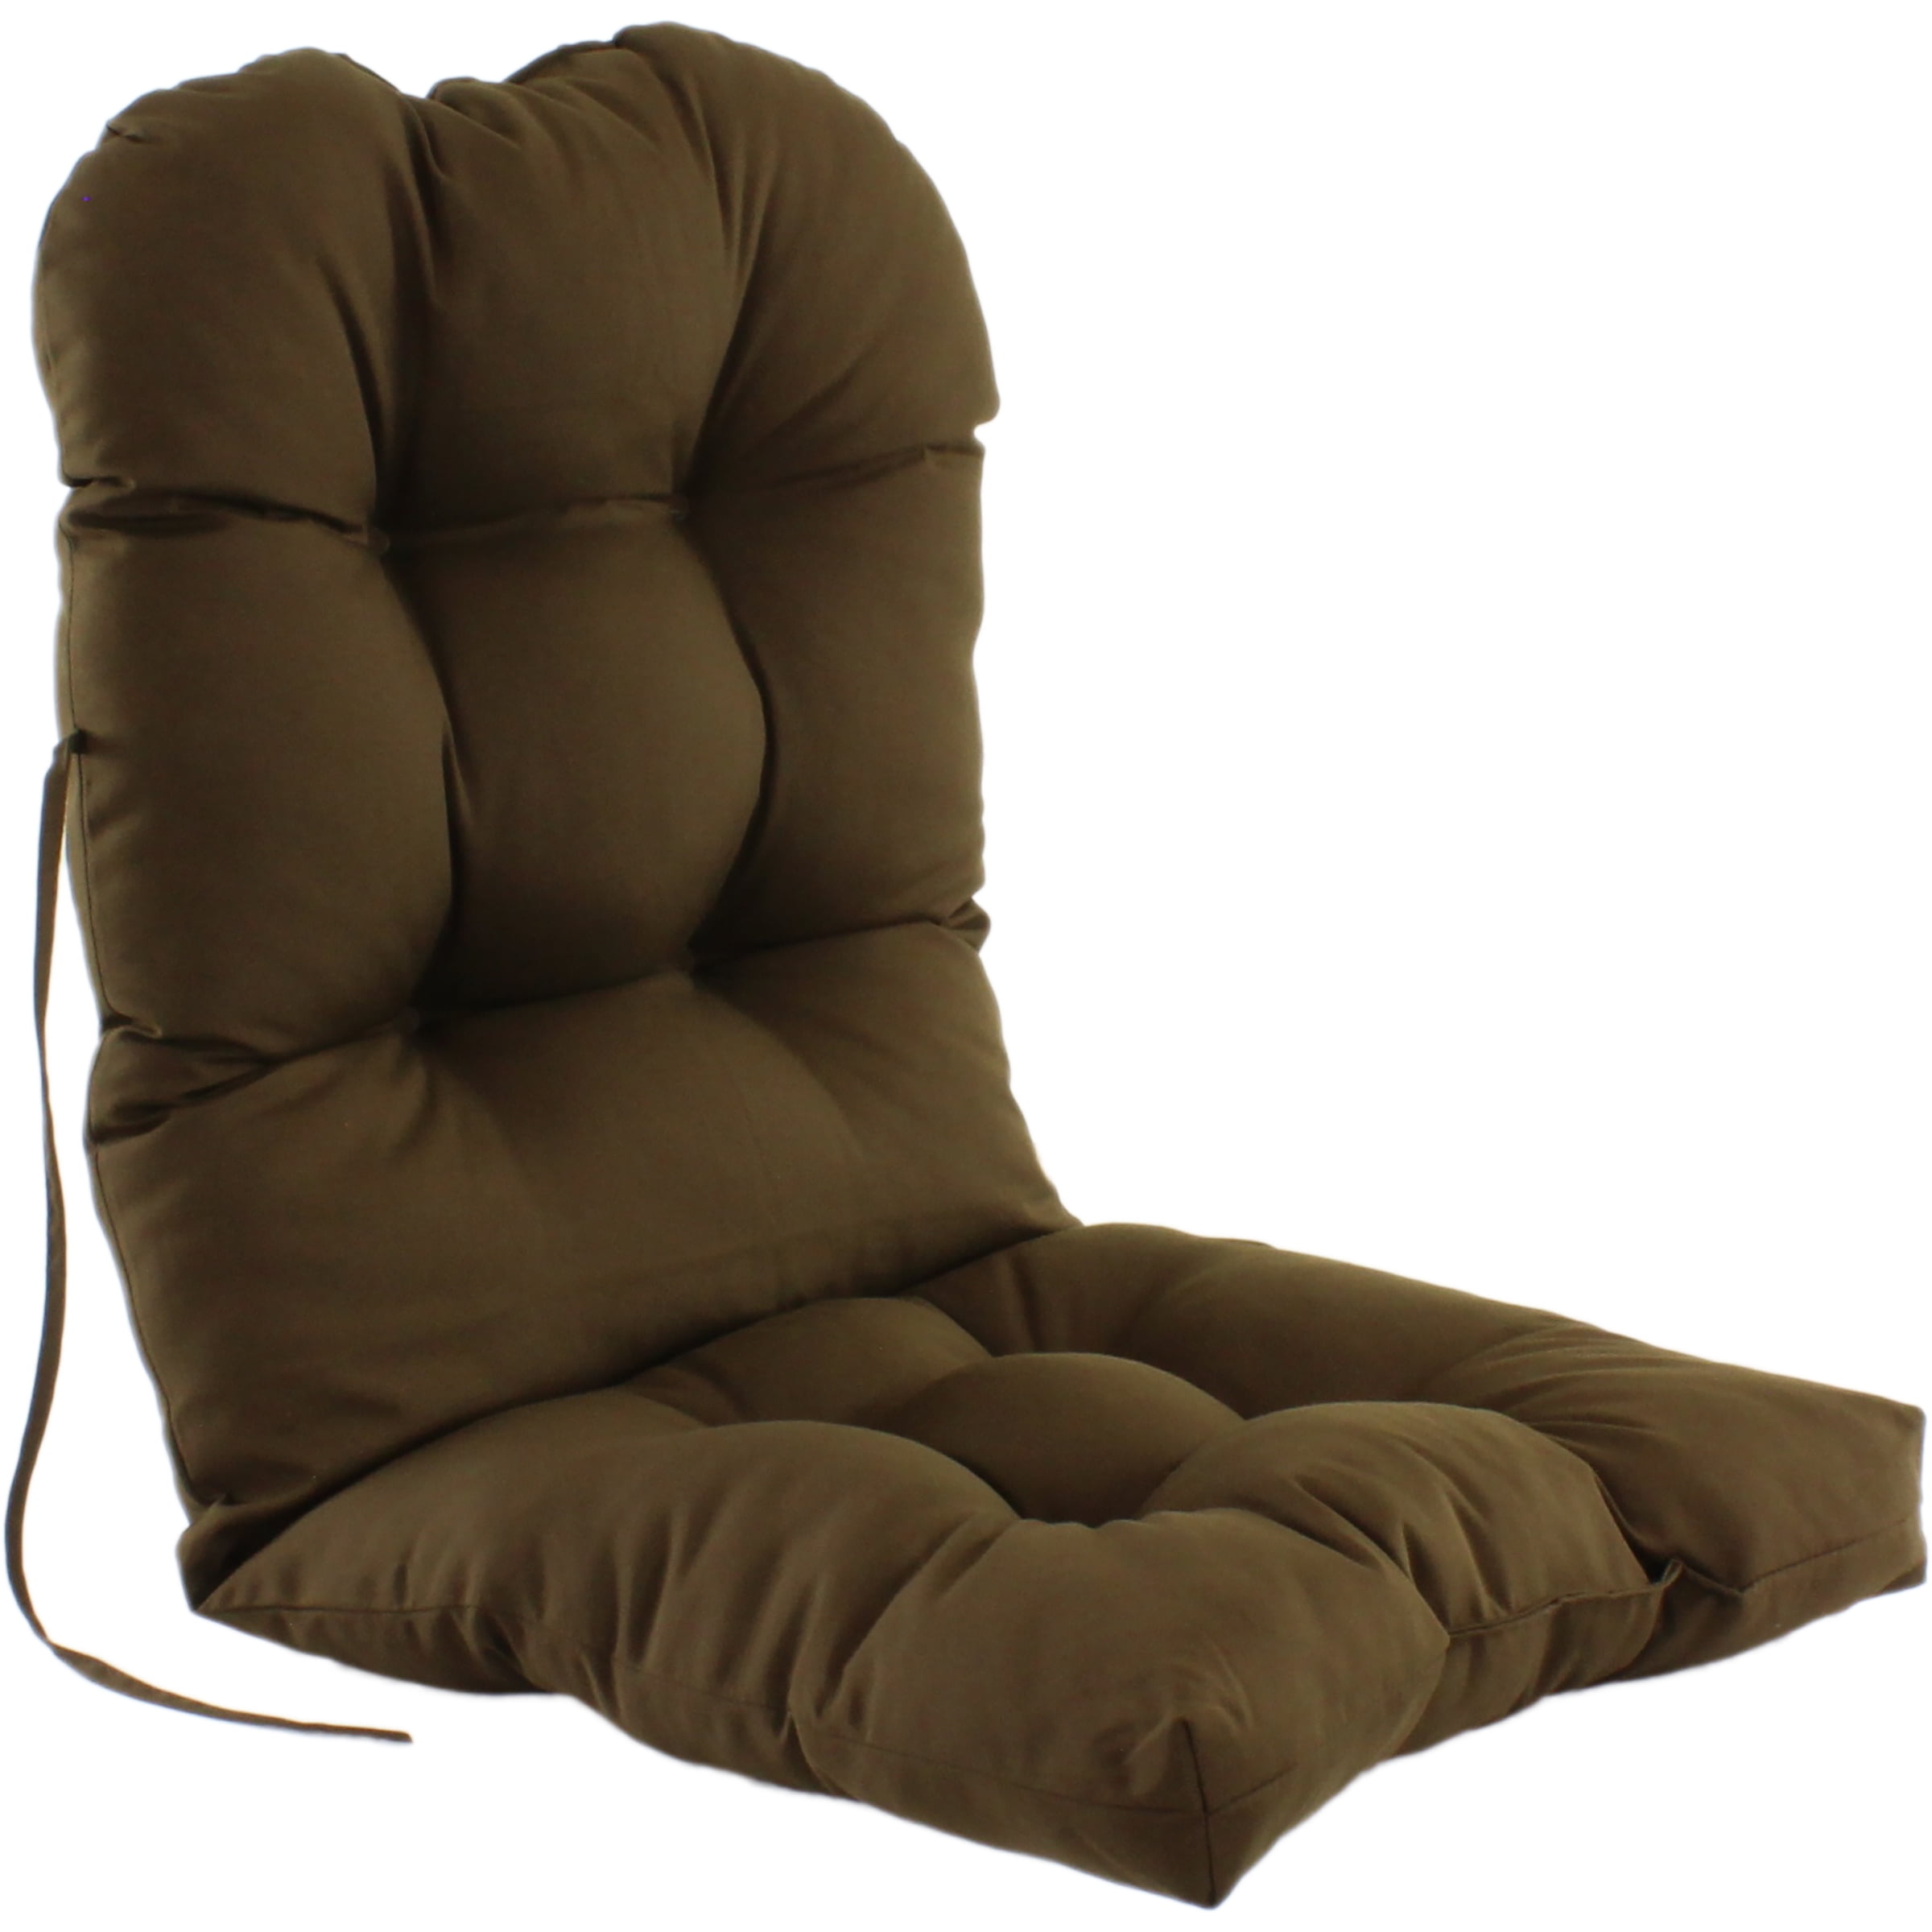 Indoor / Outdoor Adirondack Cushion Patio Chair Cushion - Walmart.com